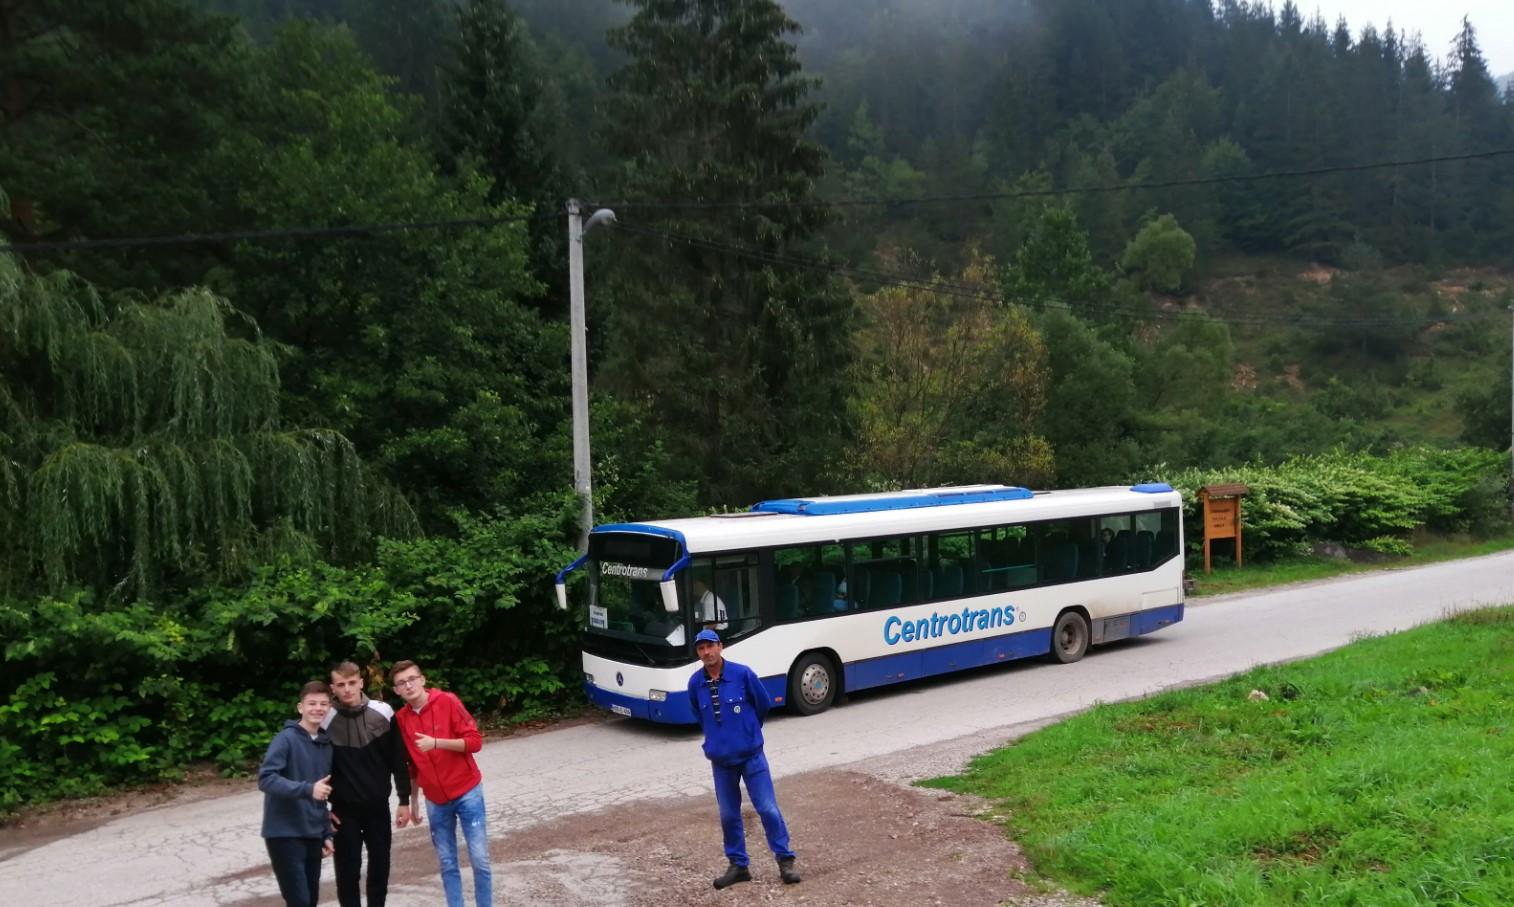 Đaci ispred autobusa - Avaz